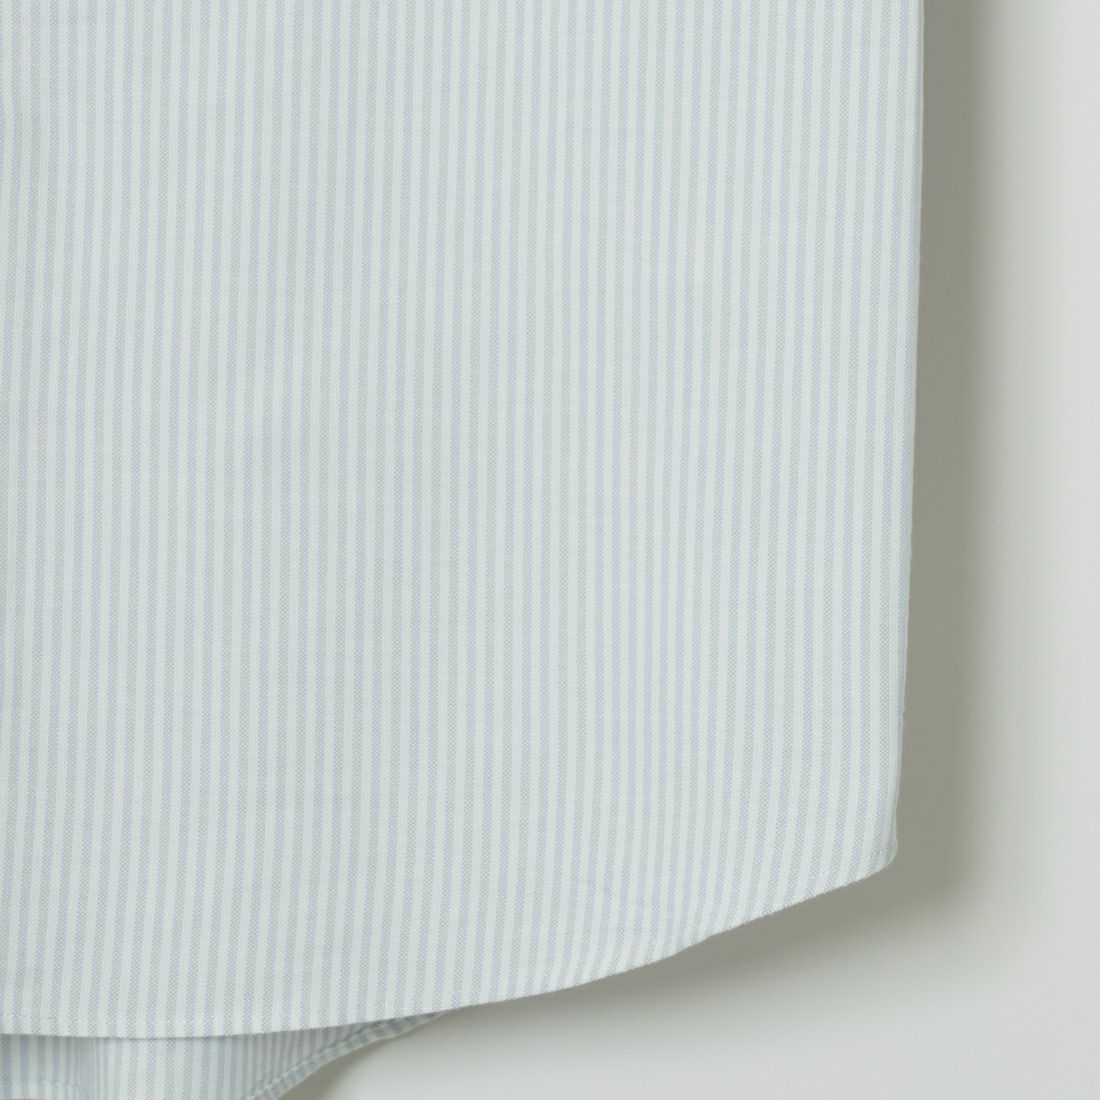 DANTON [ダントン] ショートスリーブ ボタンダウンシャツ [DT-B0118CMX] WHITE/GREY